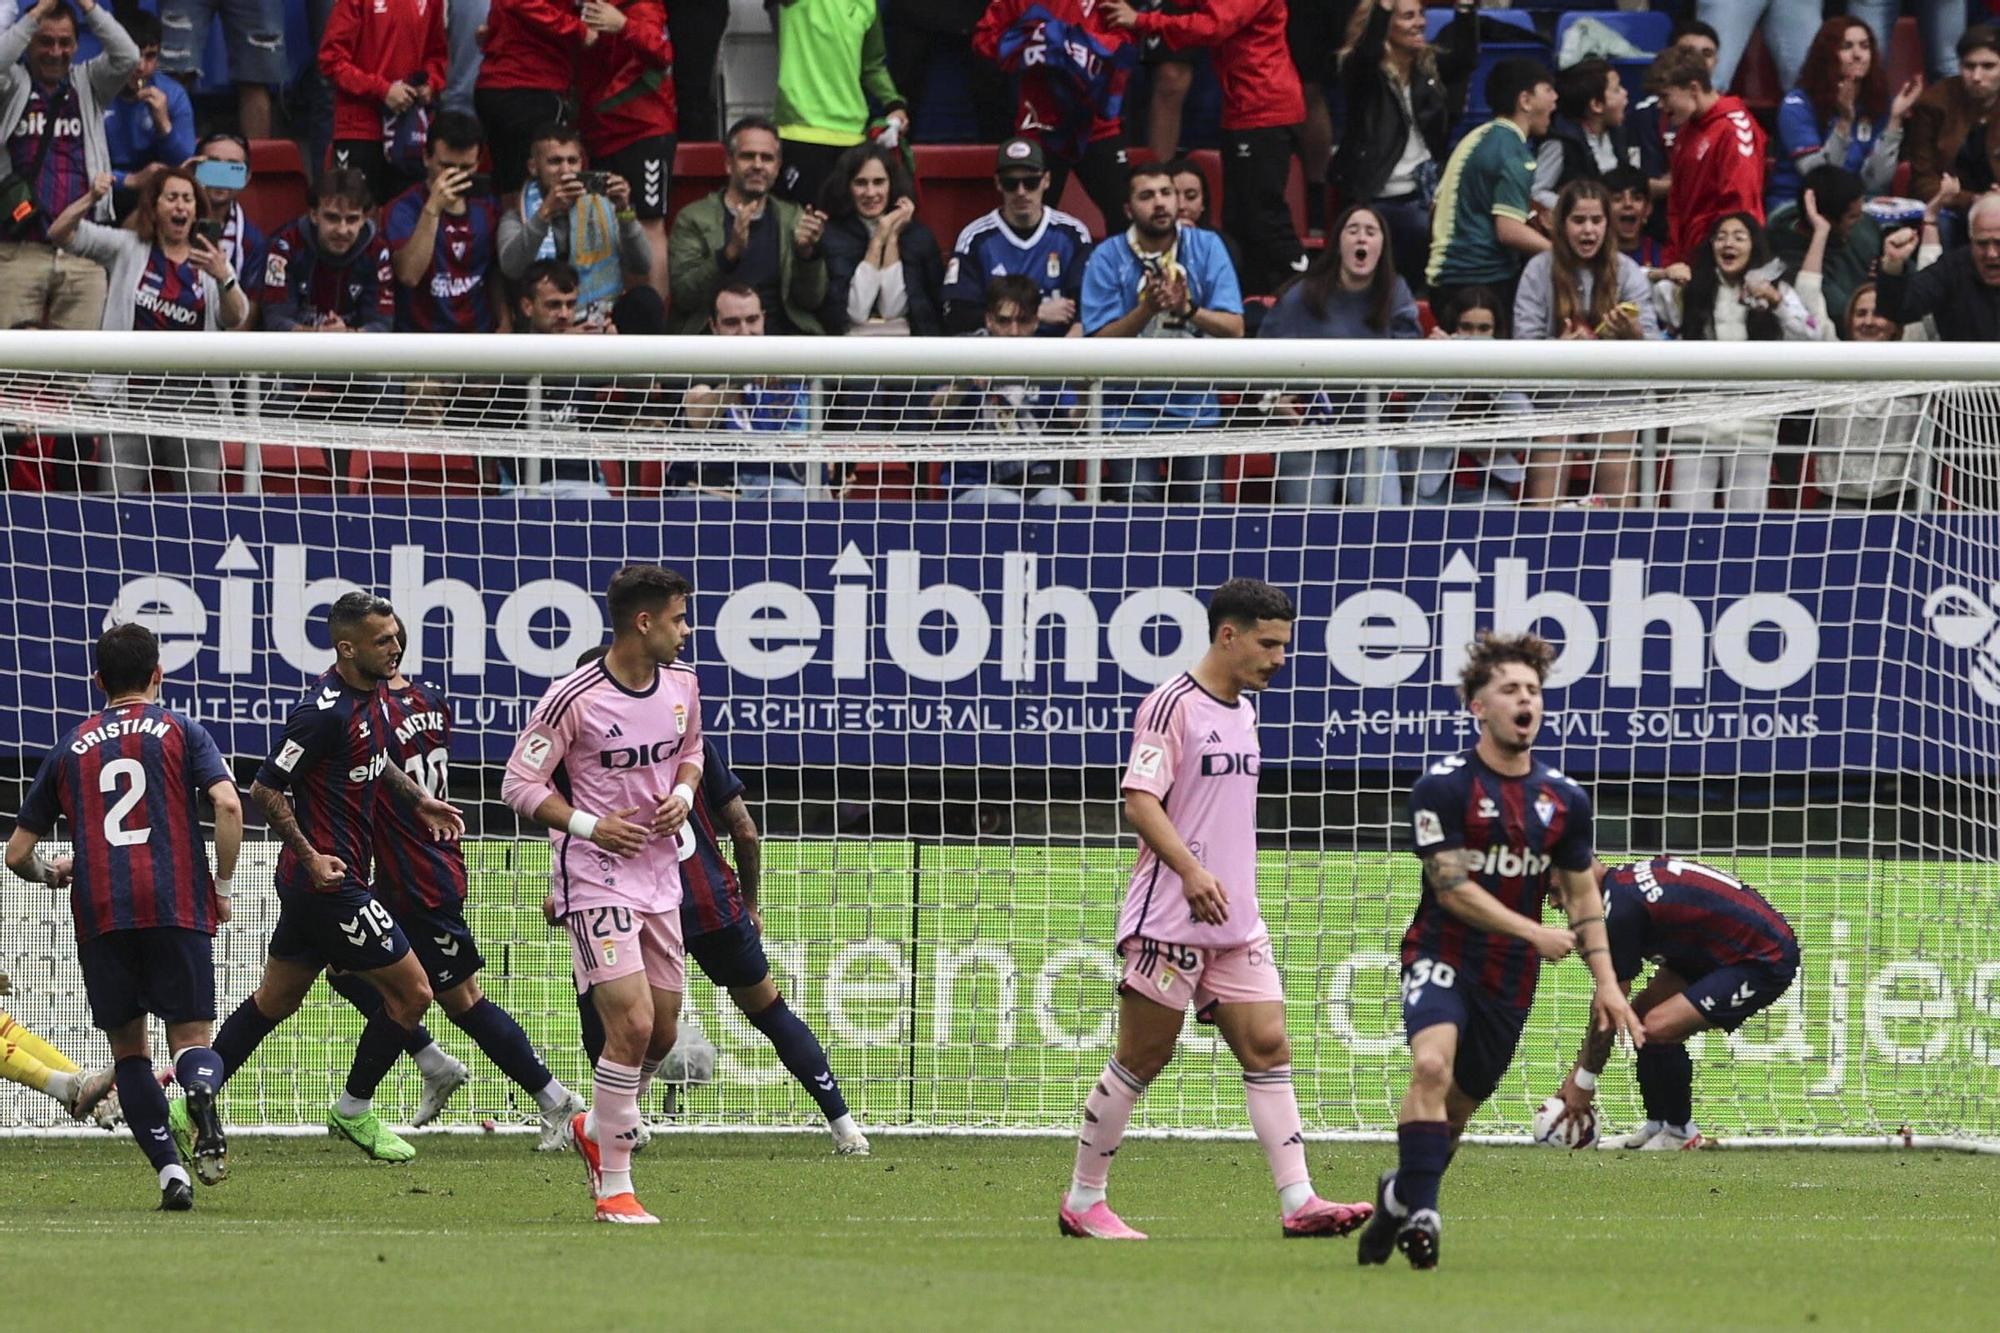 EN IMÁGENES: Así fue el partido entre el Eibar y el Real Oviedo